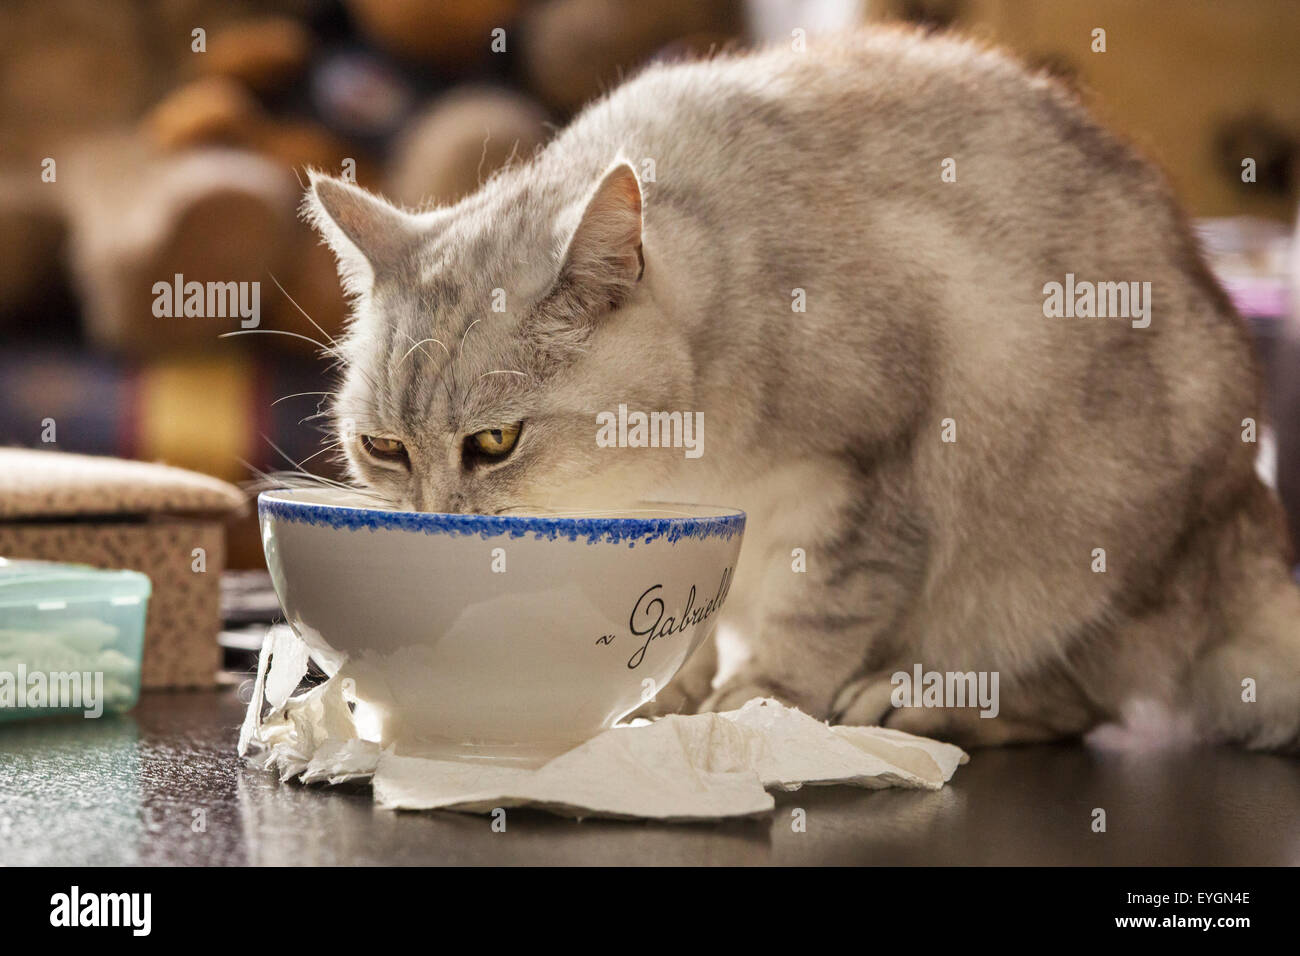 British Shorthair gato bebiendo leche de tazón en casa Foto de stock